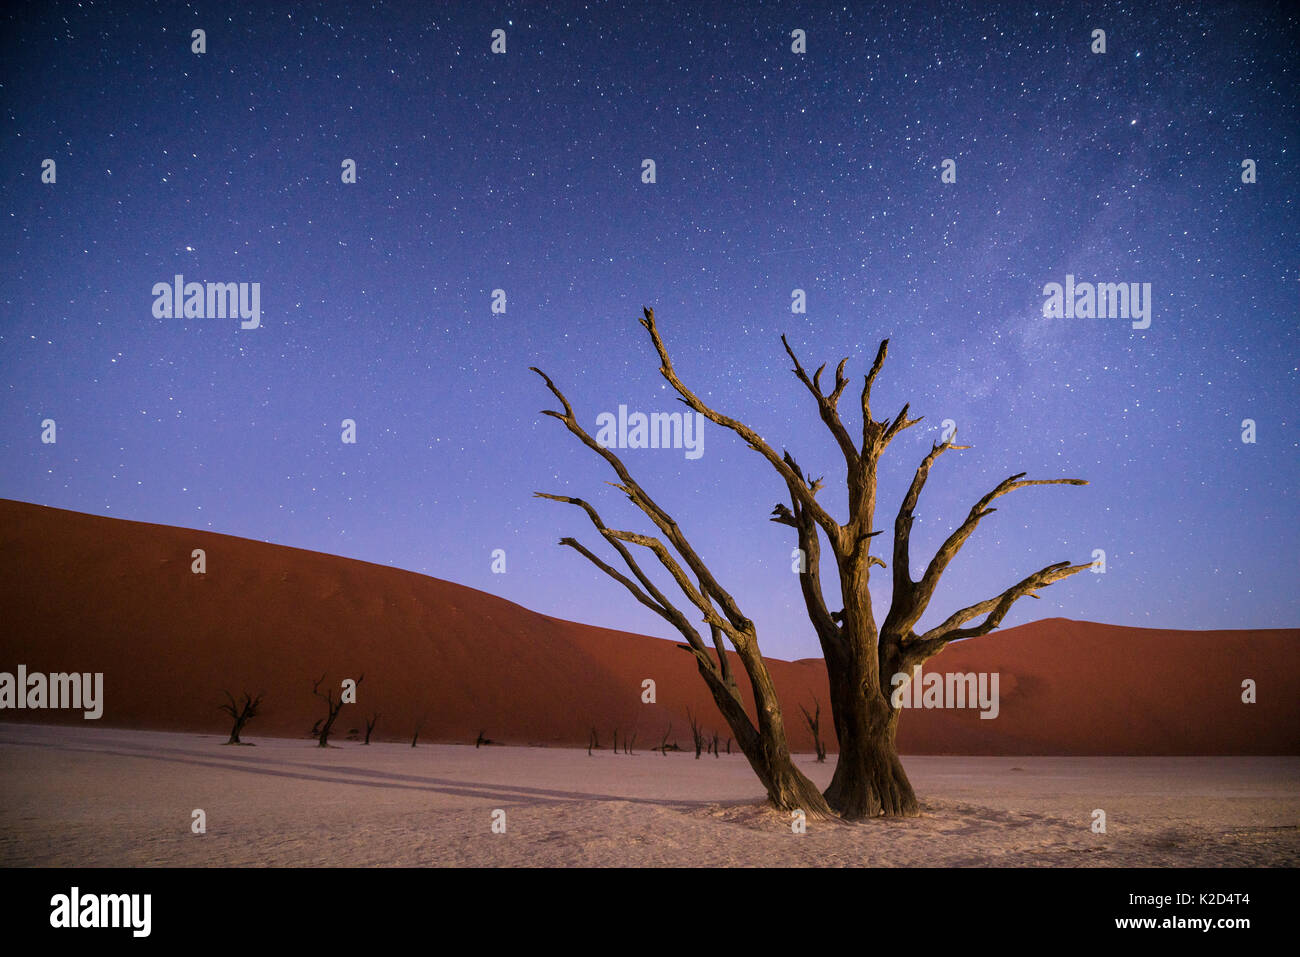 Camelthorn morts anciens arbres (Vachellia erioloba) de nuit avec dunes rouges derrière. Désert du Namib, Namibie Sossusvlei,. Composite. Banque D'Images